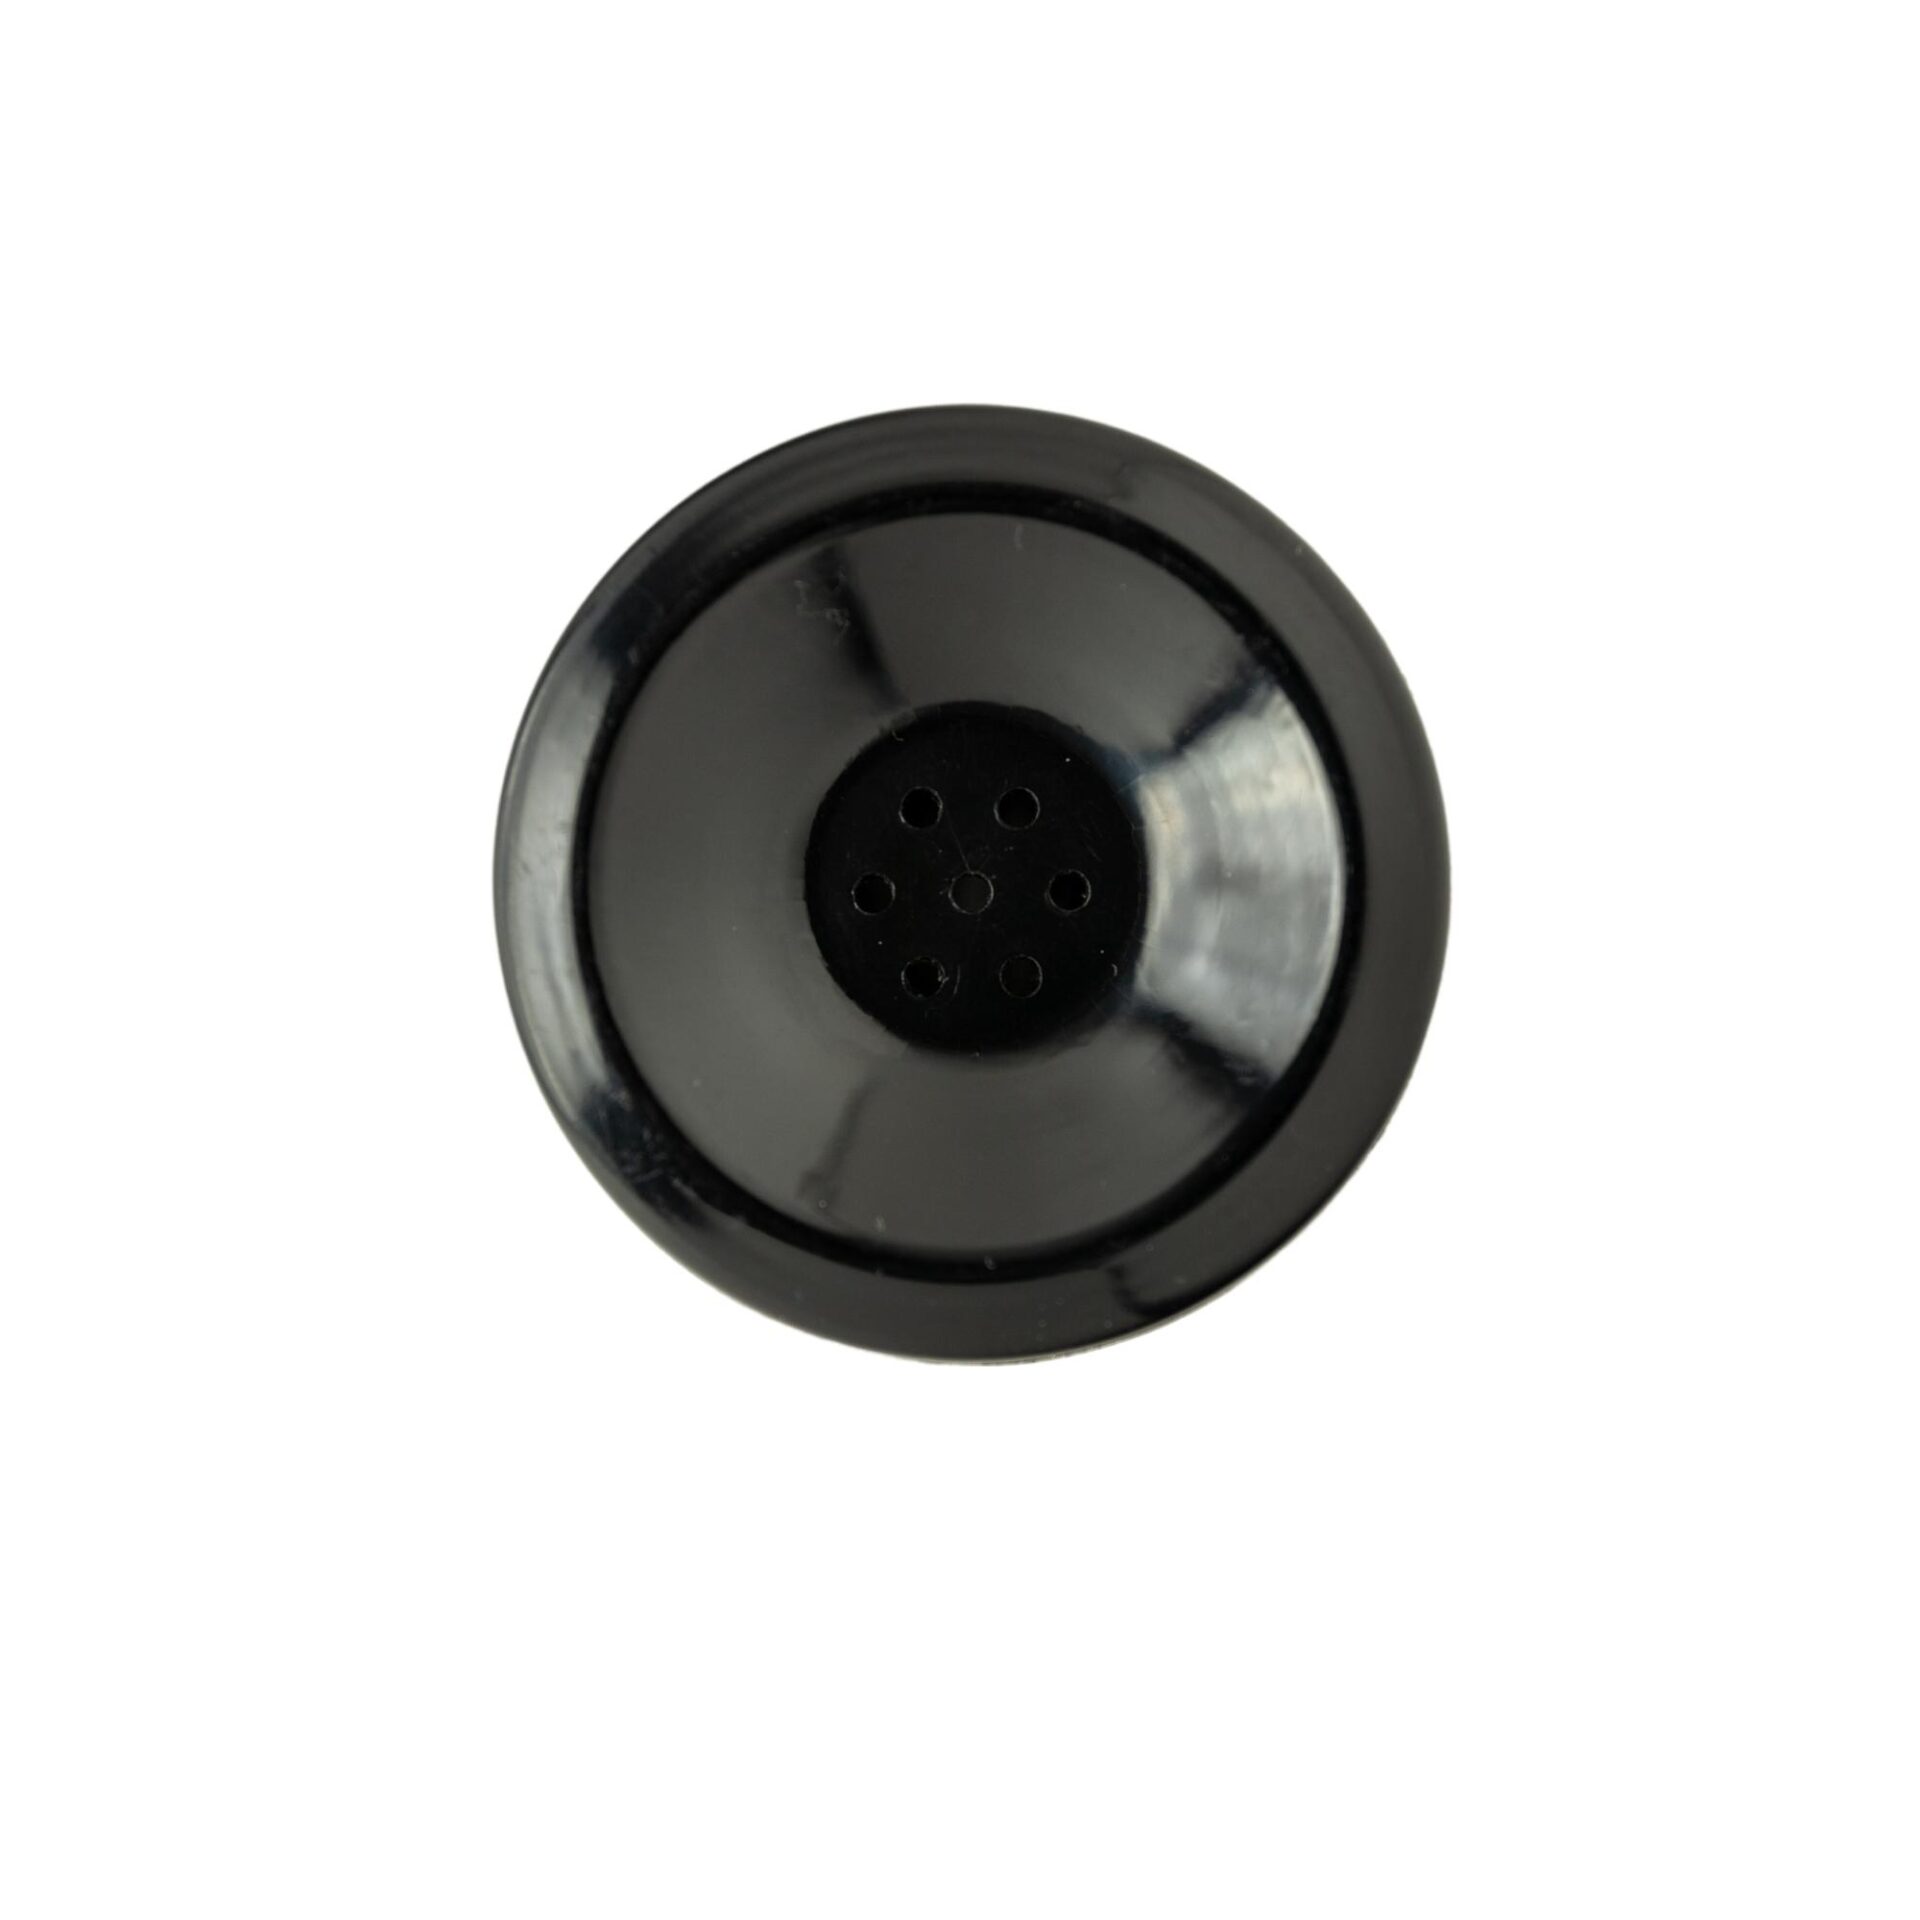 A Black Color Transmitter Cap in Black Color